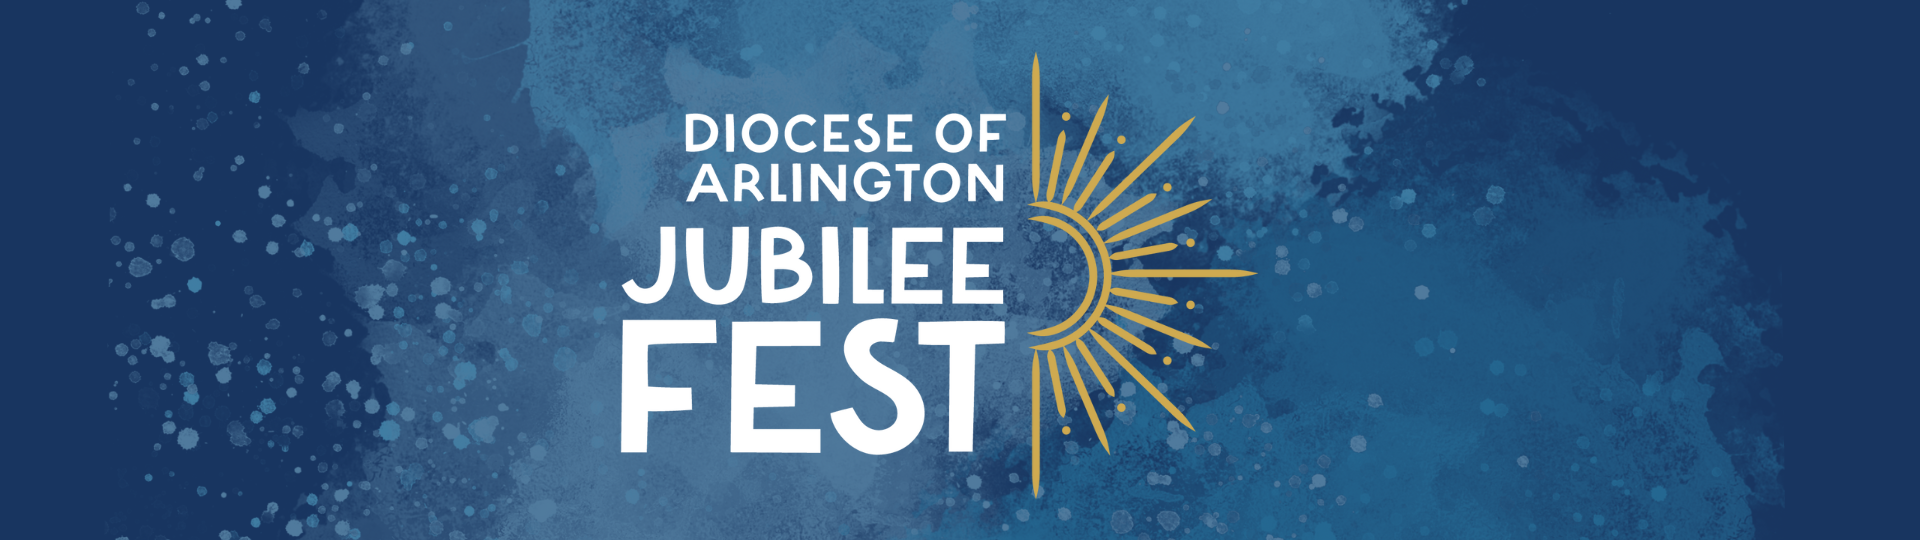 Diocesan Jubilee Festival